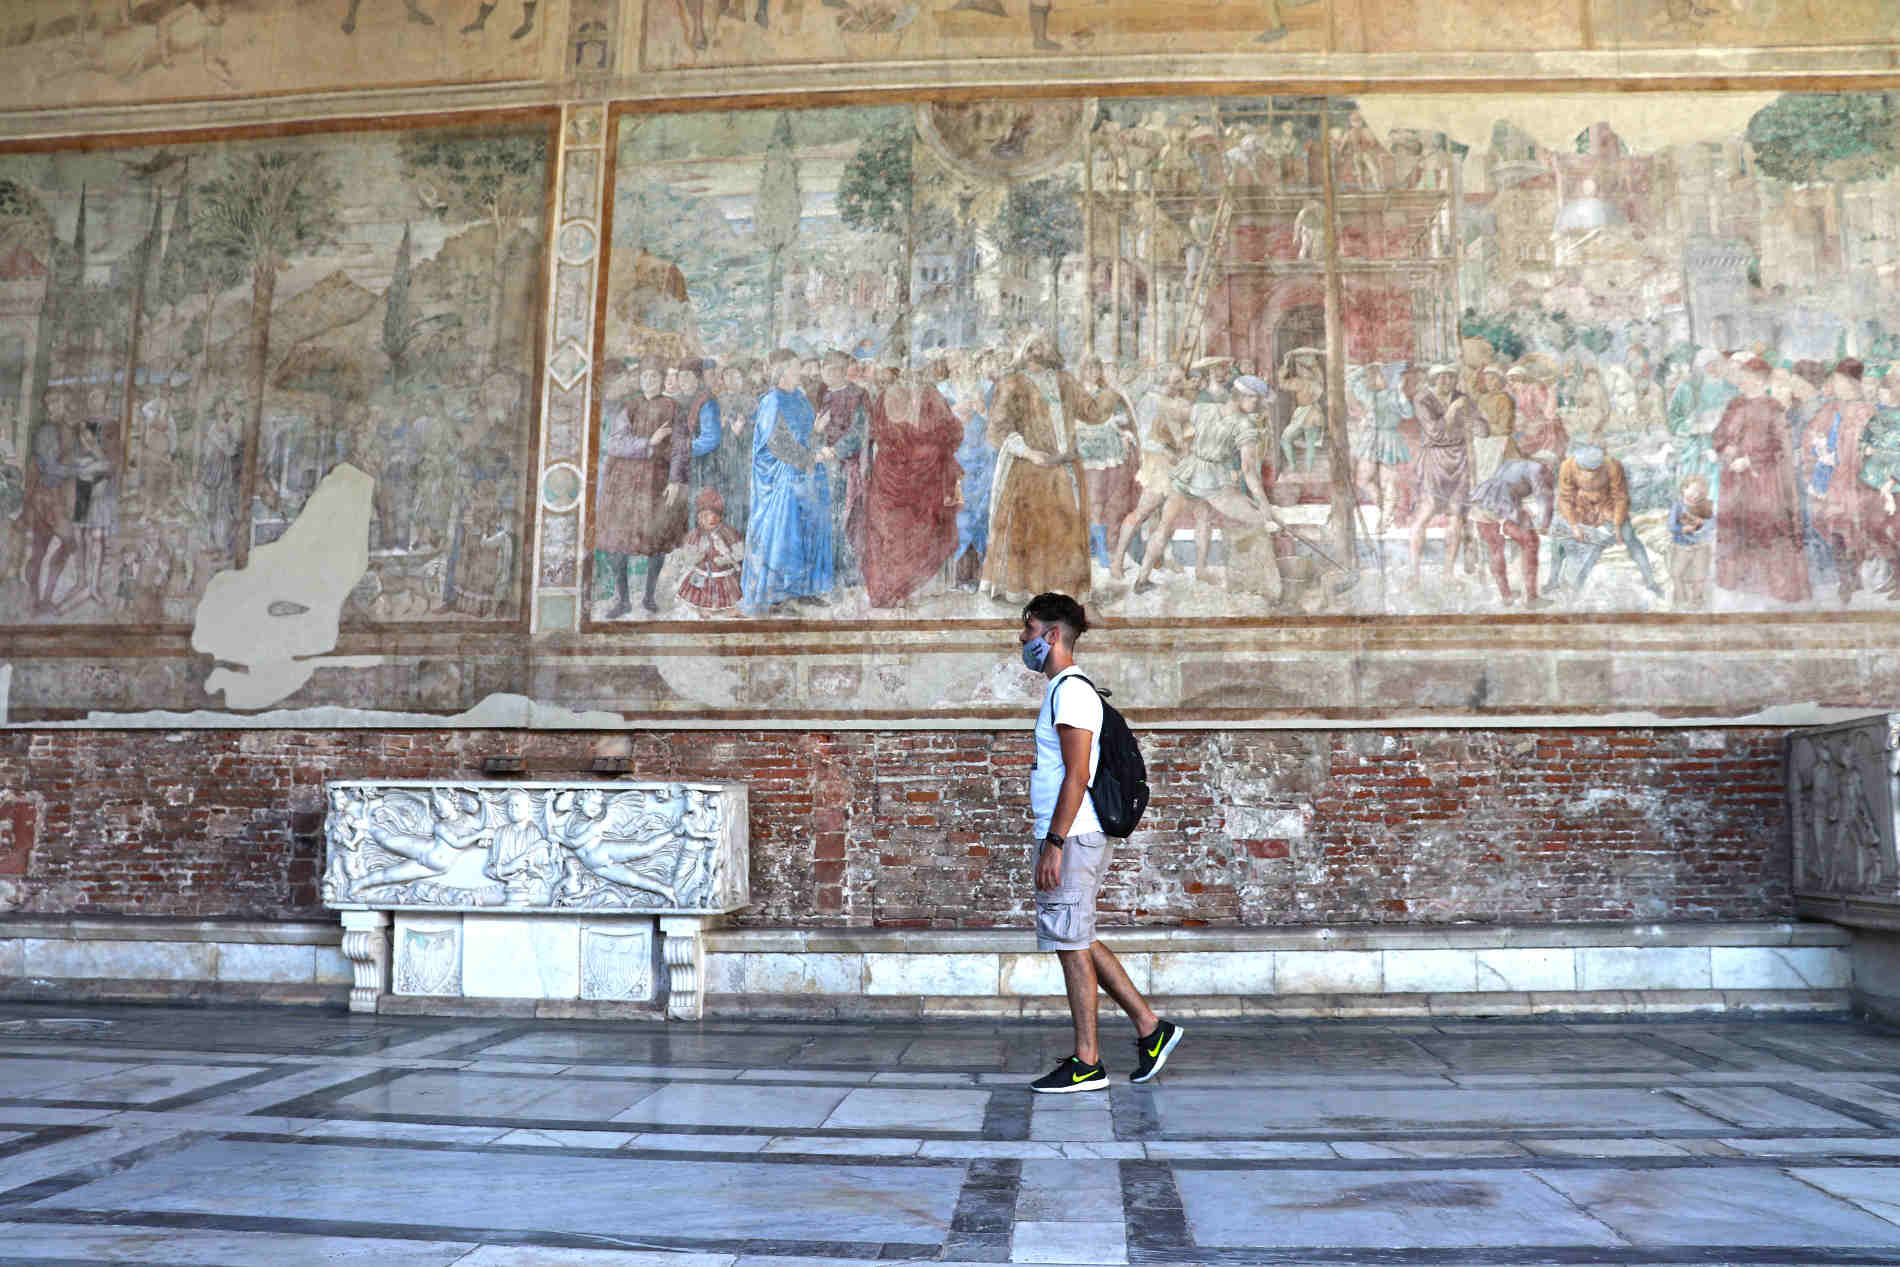 Camposanto monumentale a Pisa uno dei Patrimoni dell'Umanità in Italia